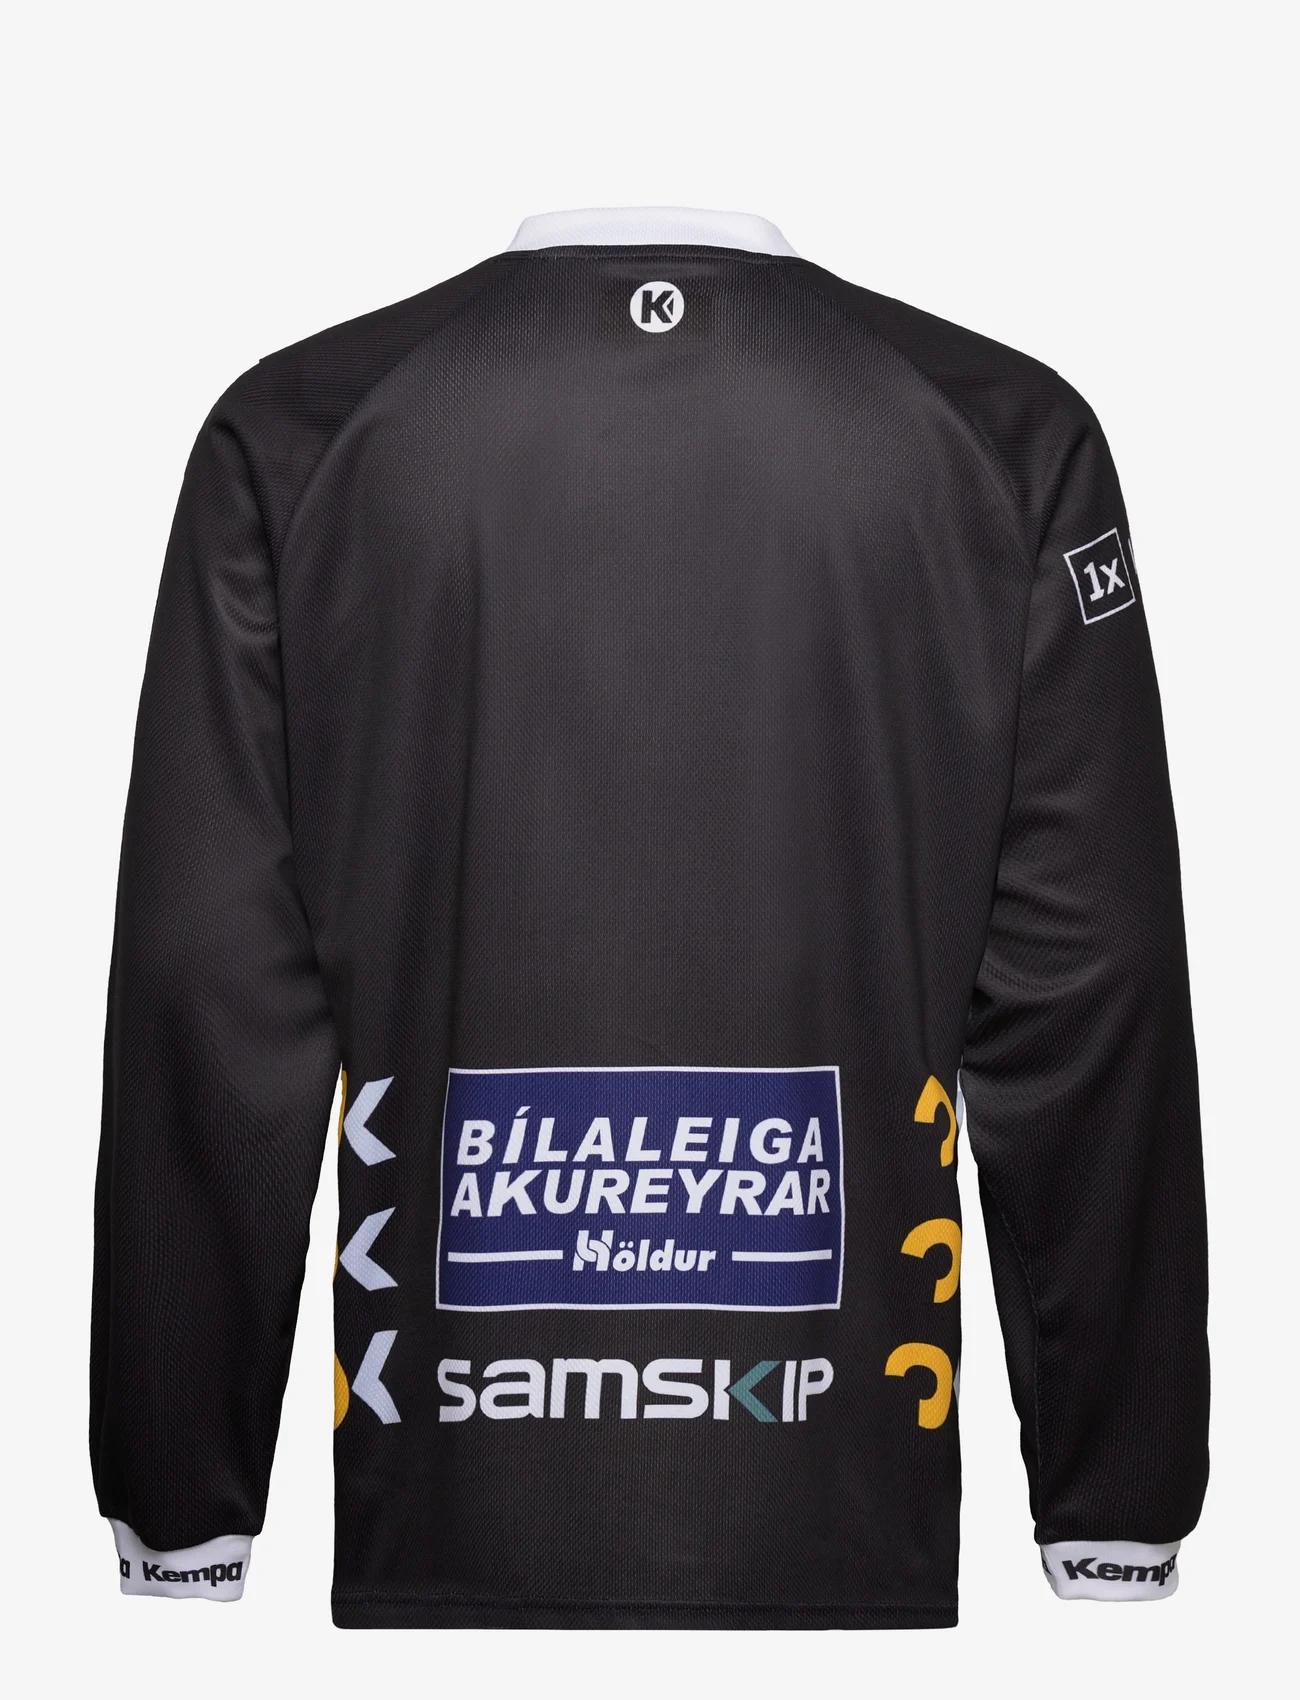 Kempa - Iceland Goalkeeper Shirt 23/24 - langarmshirts - black/white - 1